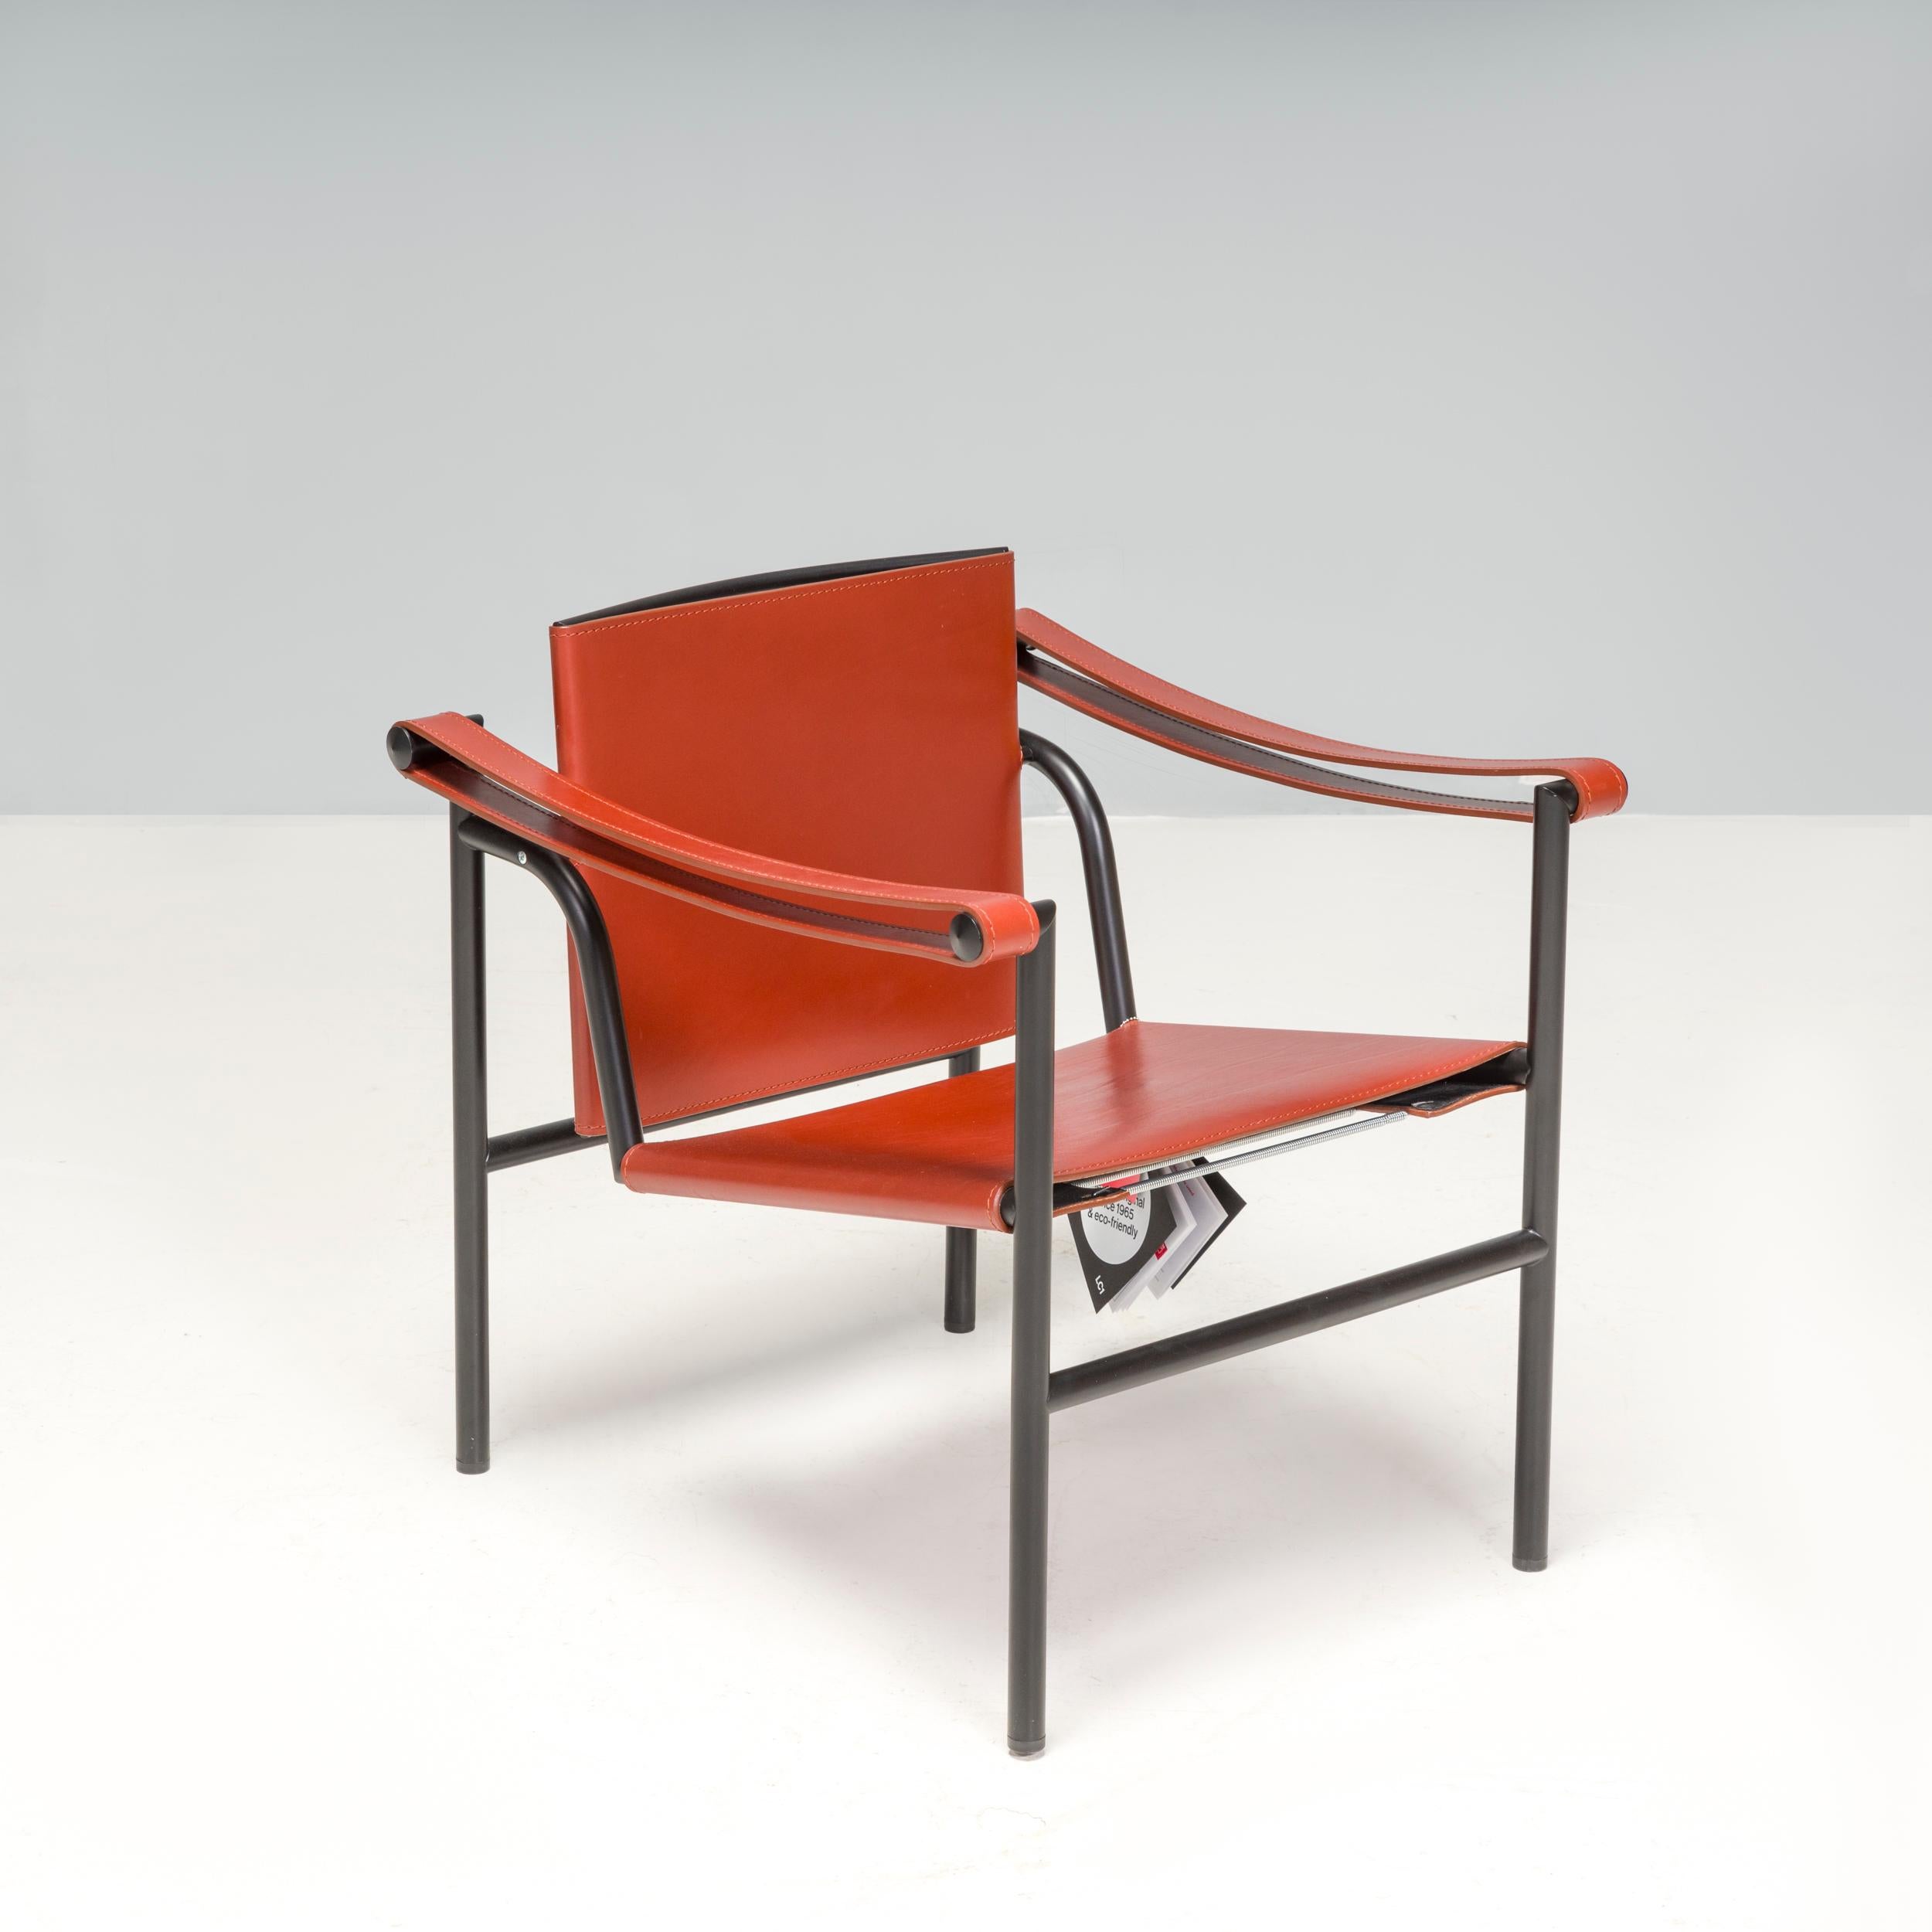 Aujourd'hui connu sous le nom de 1 Fauteuil Dossier Basculant, le fauteuil LC1 a été initialement présenté au Salon d'Automne en 1929 par les designers Le Corbusier, Pierre Jeanneret et Charlotte Perriand.

Depuis lors, la chaise d'appoint LC1 est